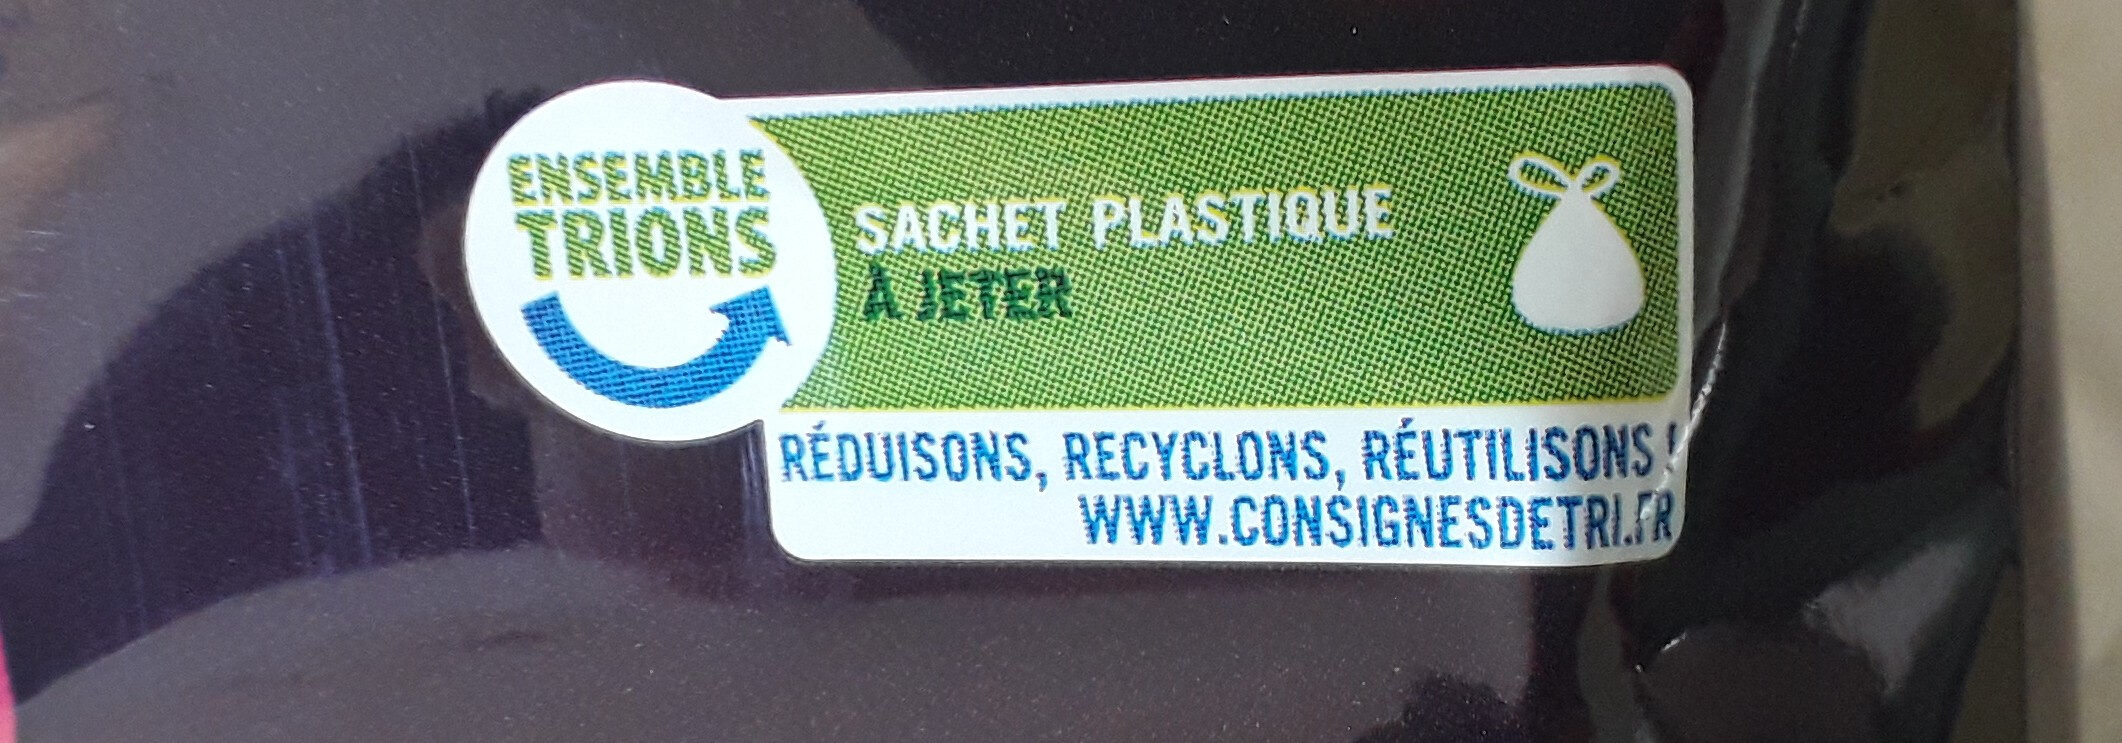 Riz basmati - Instruction de recyclage et/ou informations d'emballage - fr